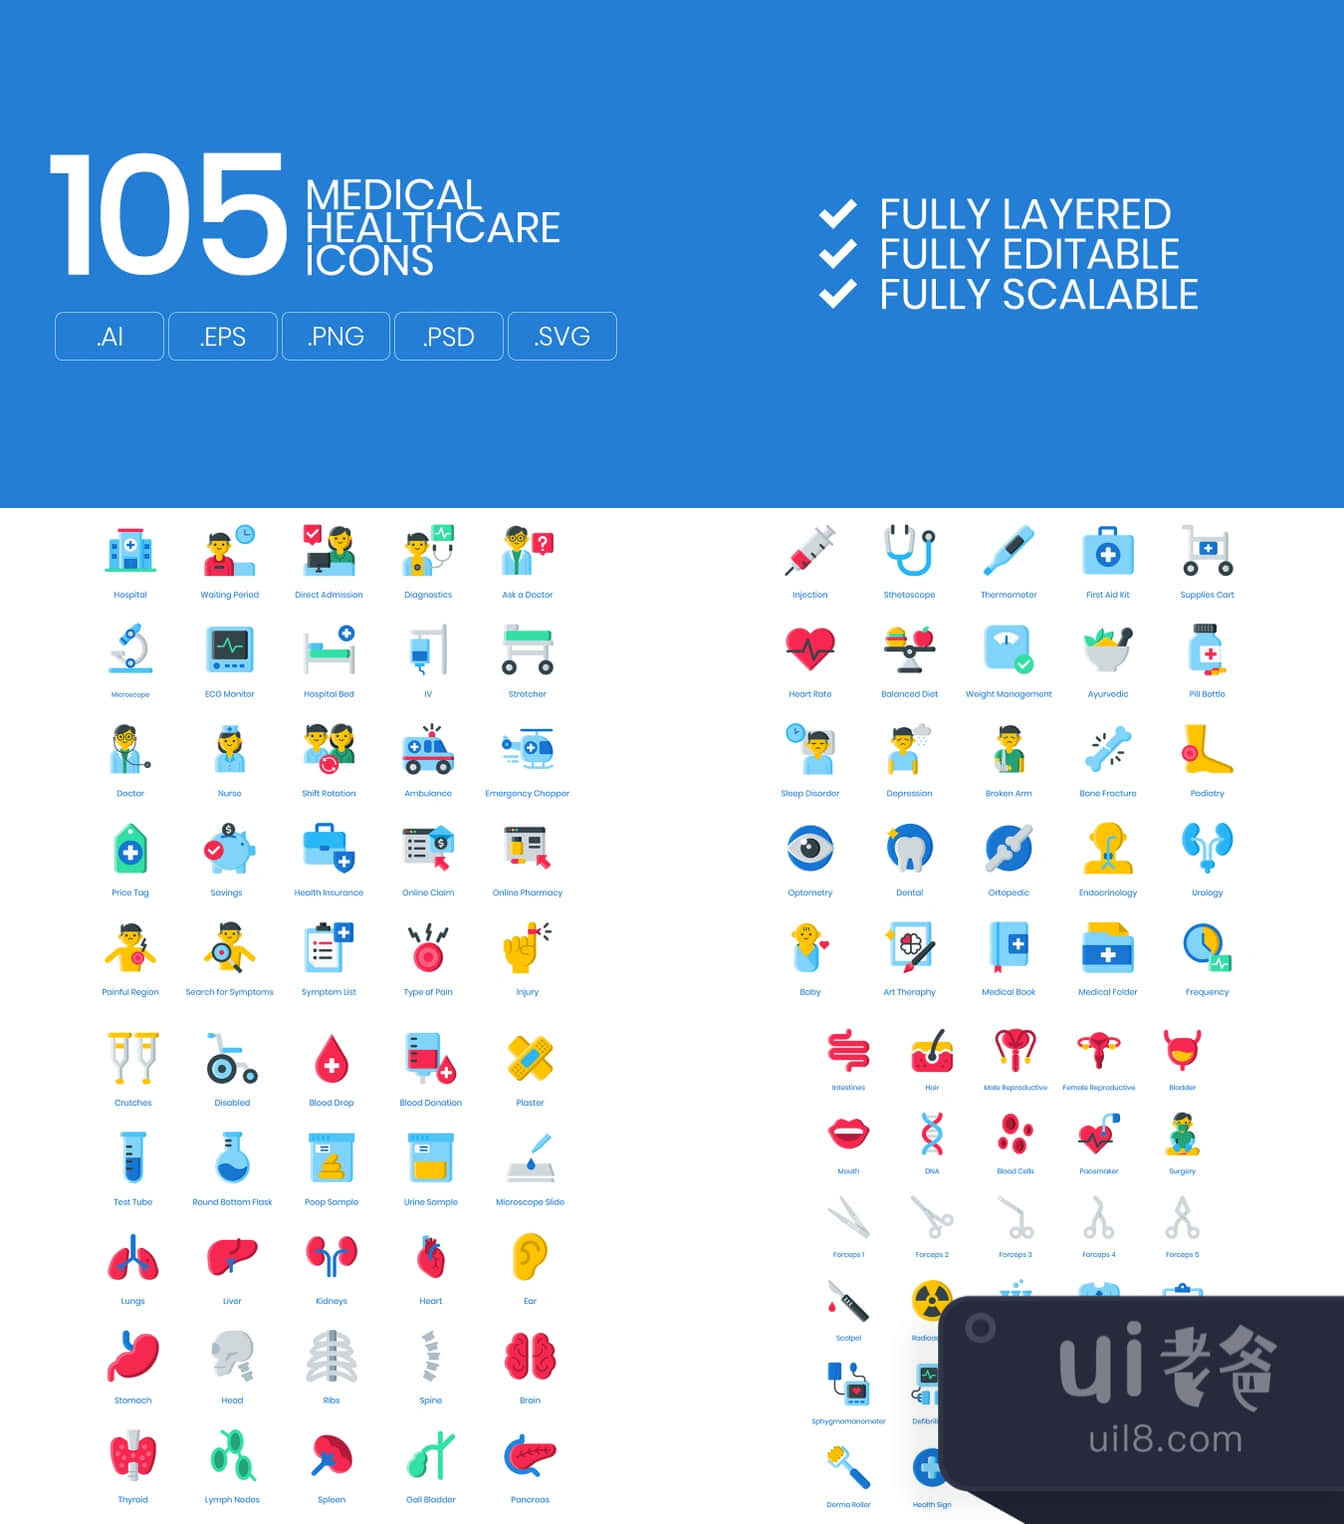 105个医疗卫生图标 (105 Medical Healthcare Icons)插图